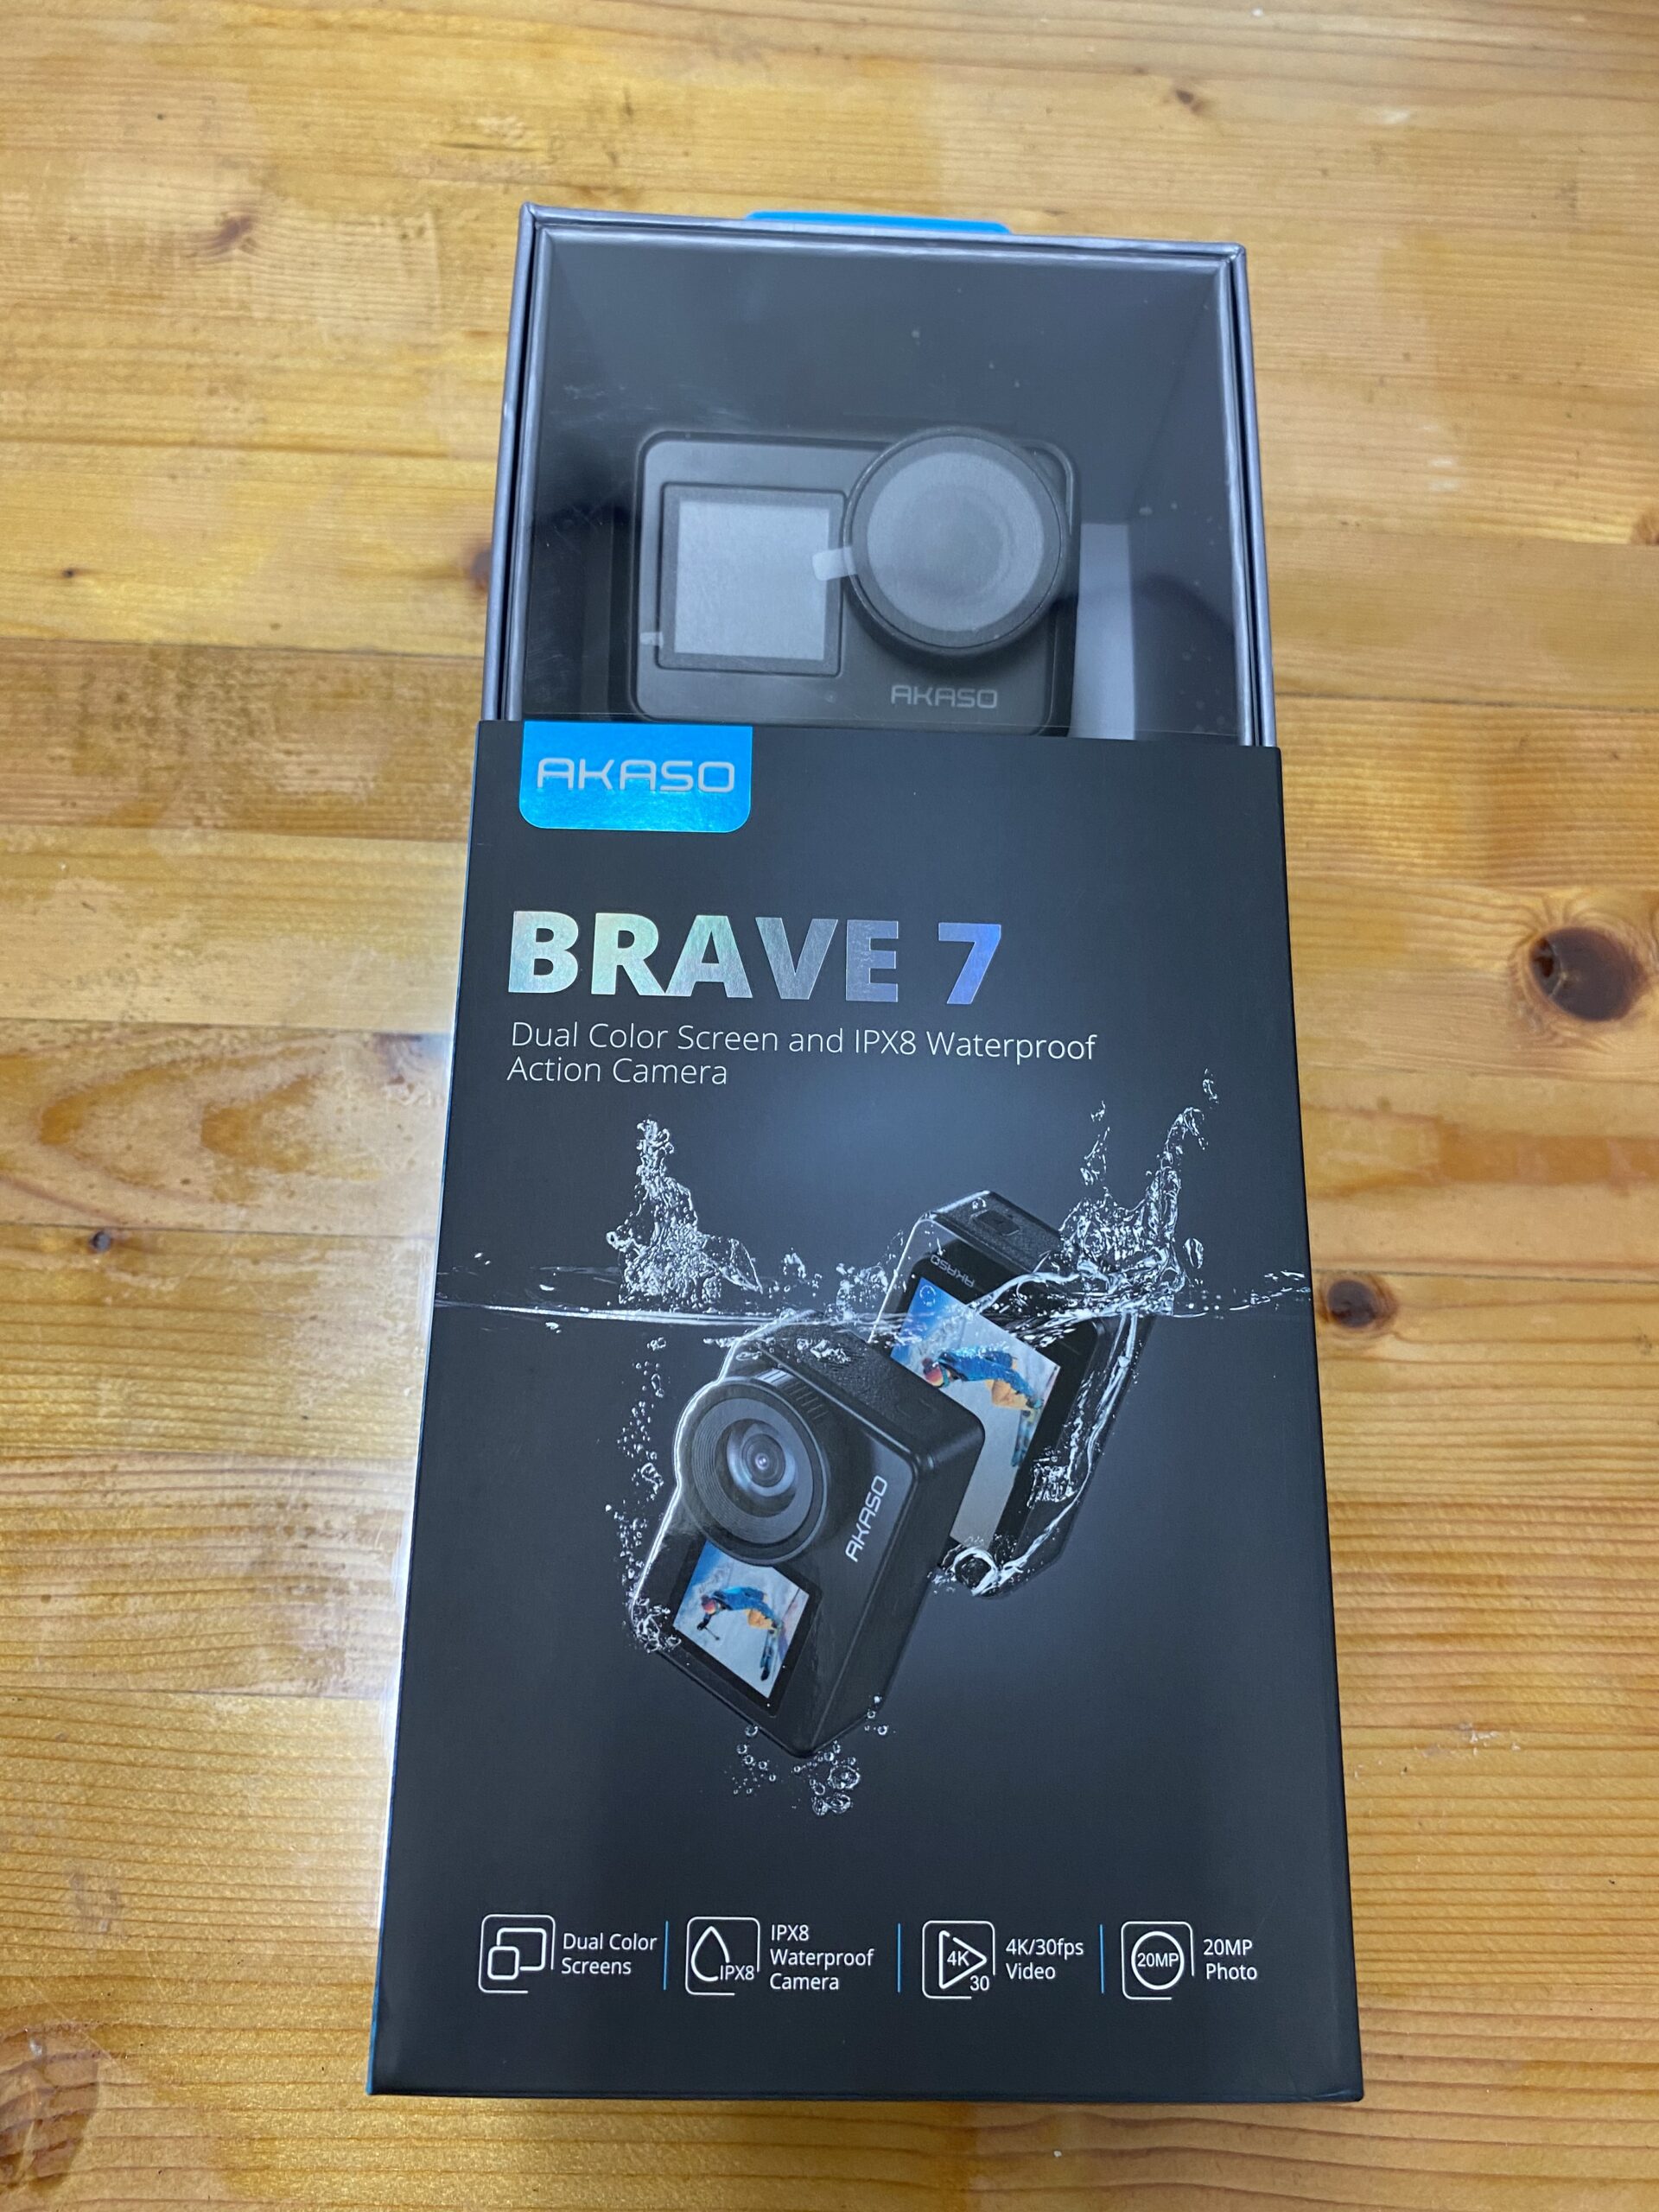 アクションカメラ AKASO Brave 7 を買ってみた - 星のブログ